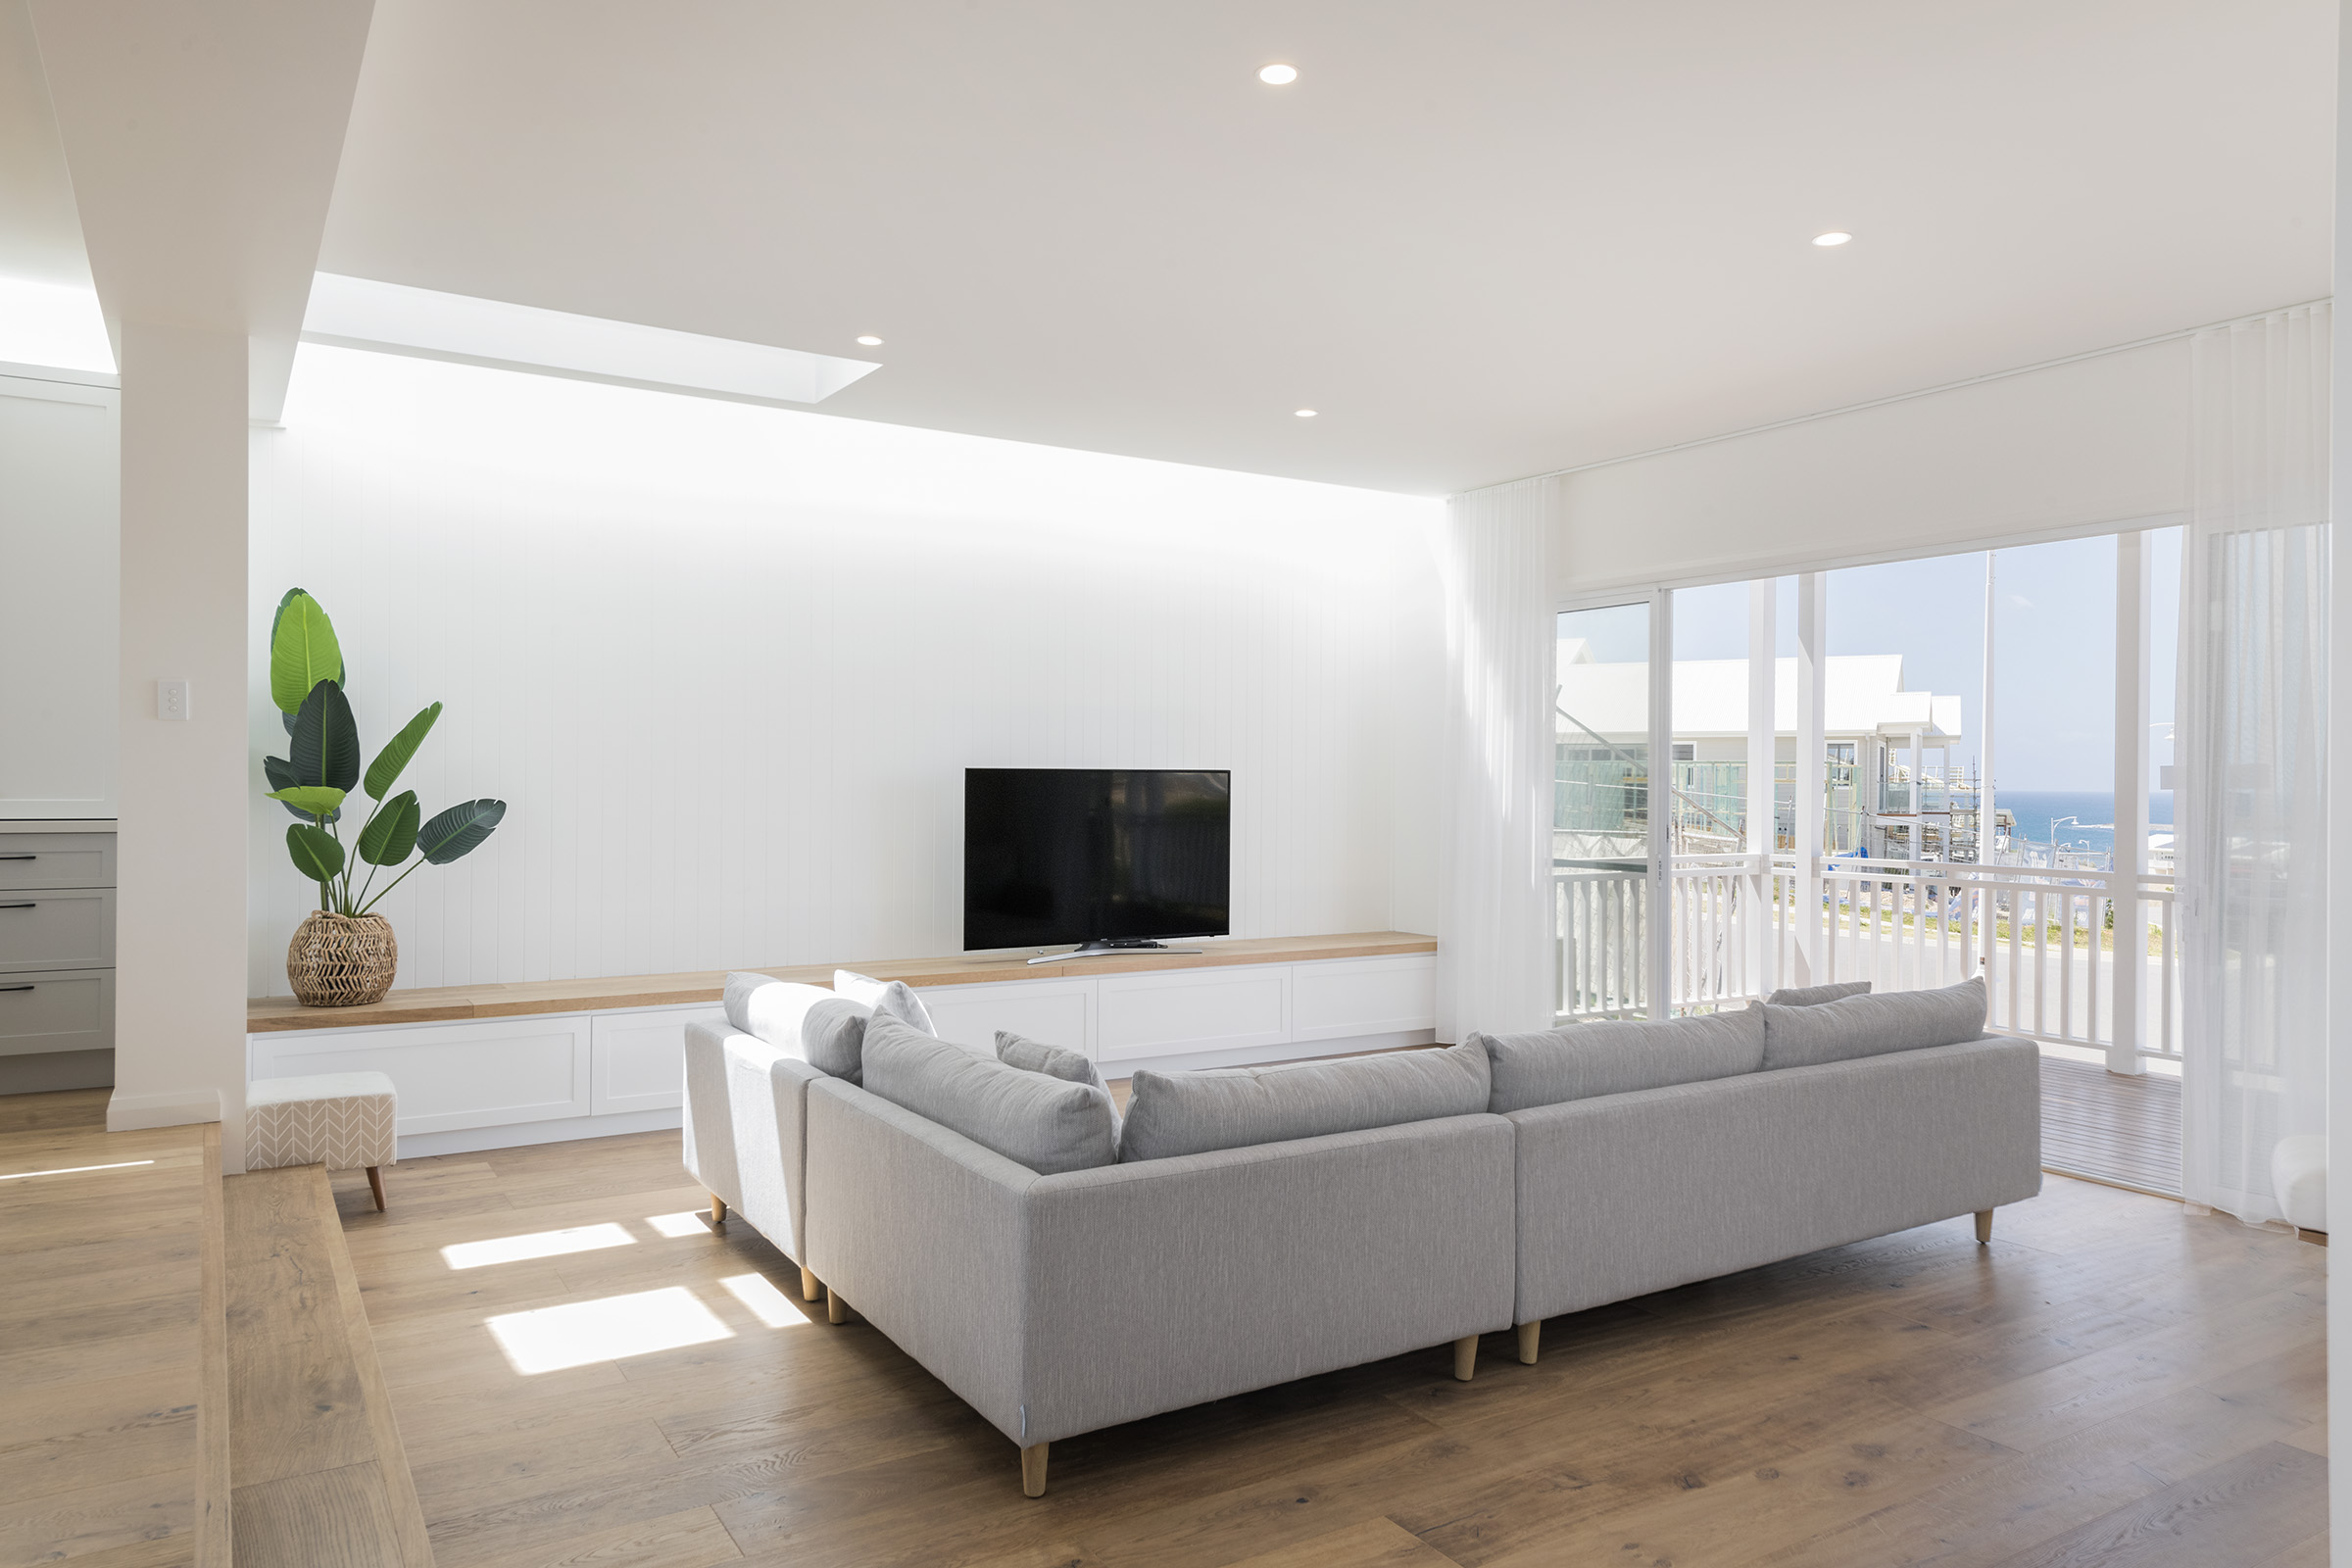 Lounge 7 - Home designer & builder